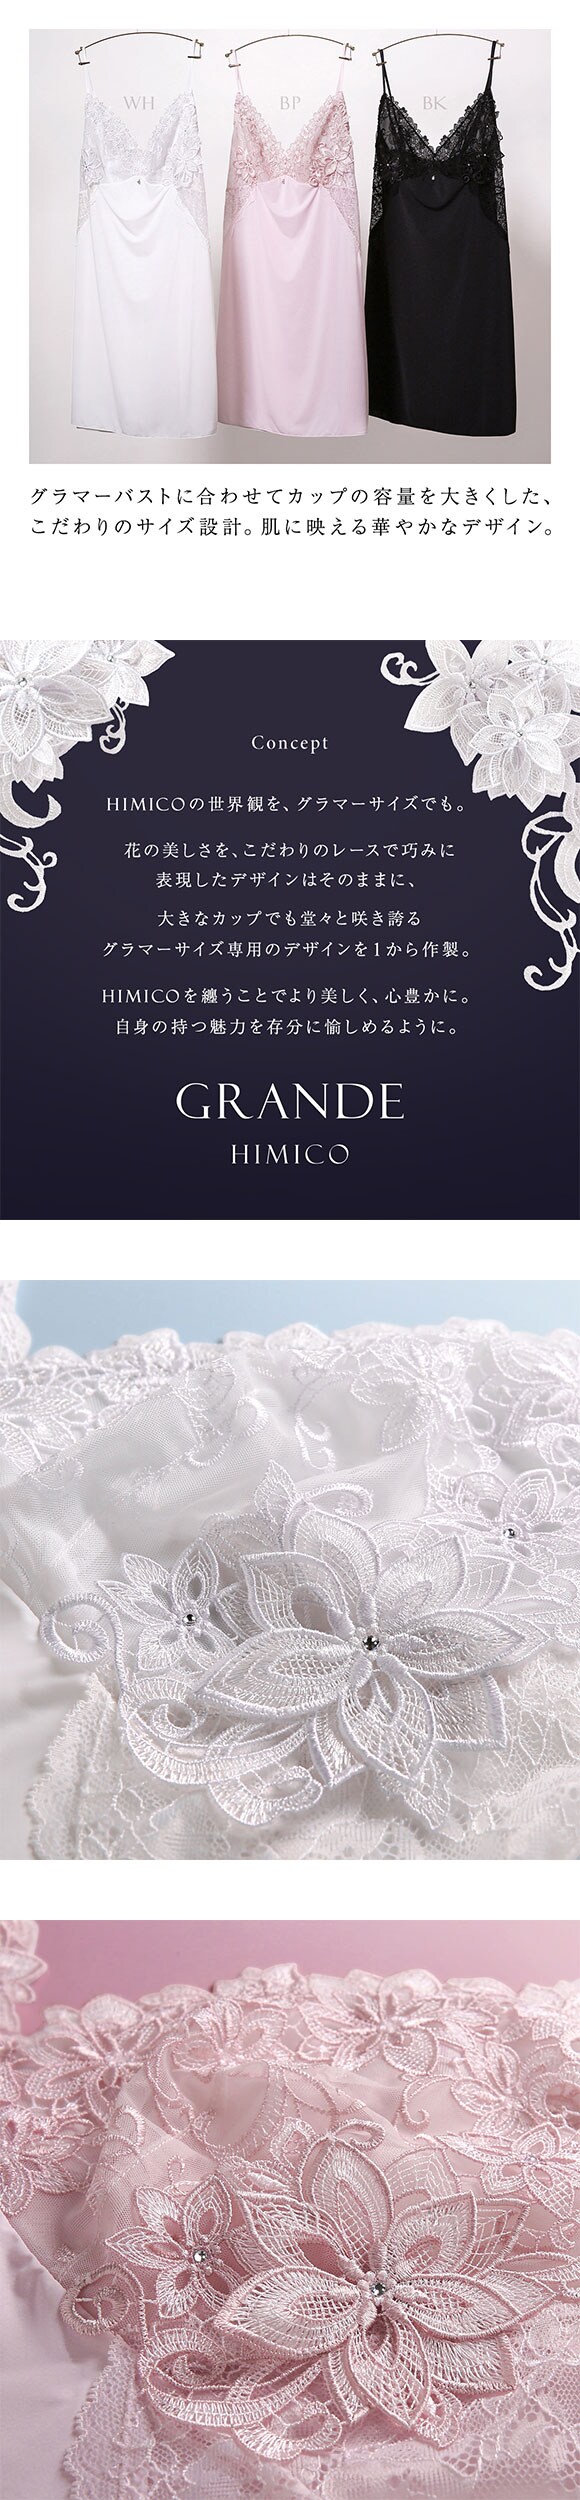 HIMICO GRANDE 003 スリップ ロングキャミソール グラマー 大きいサイズ Dalia Stellato ランジェリー